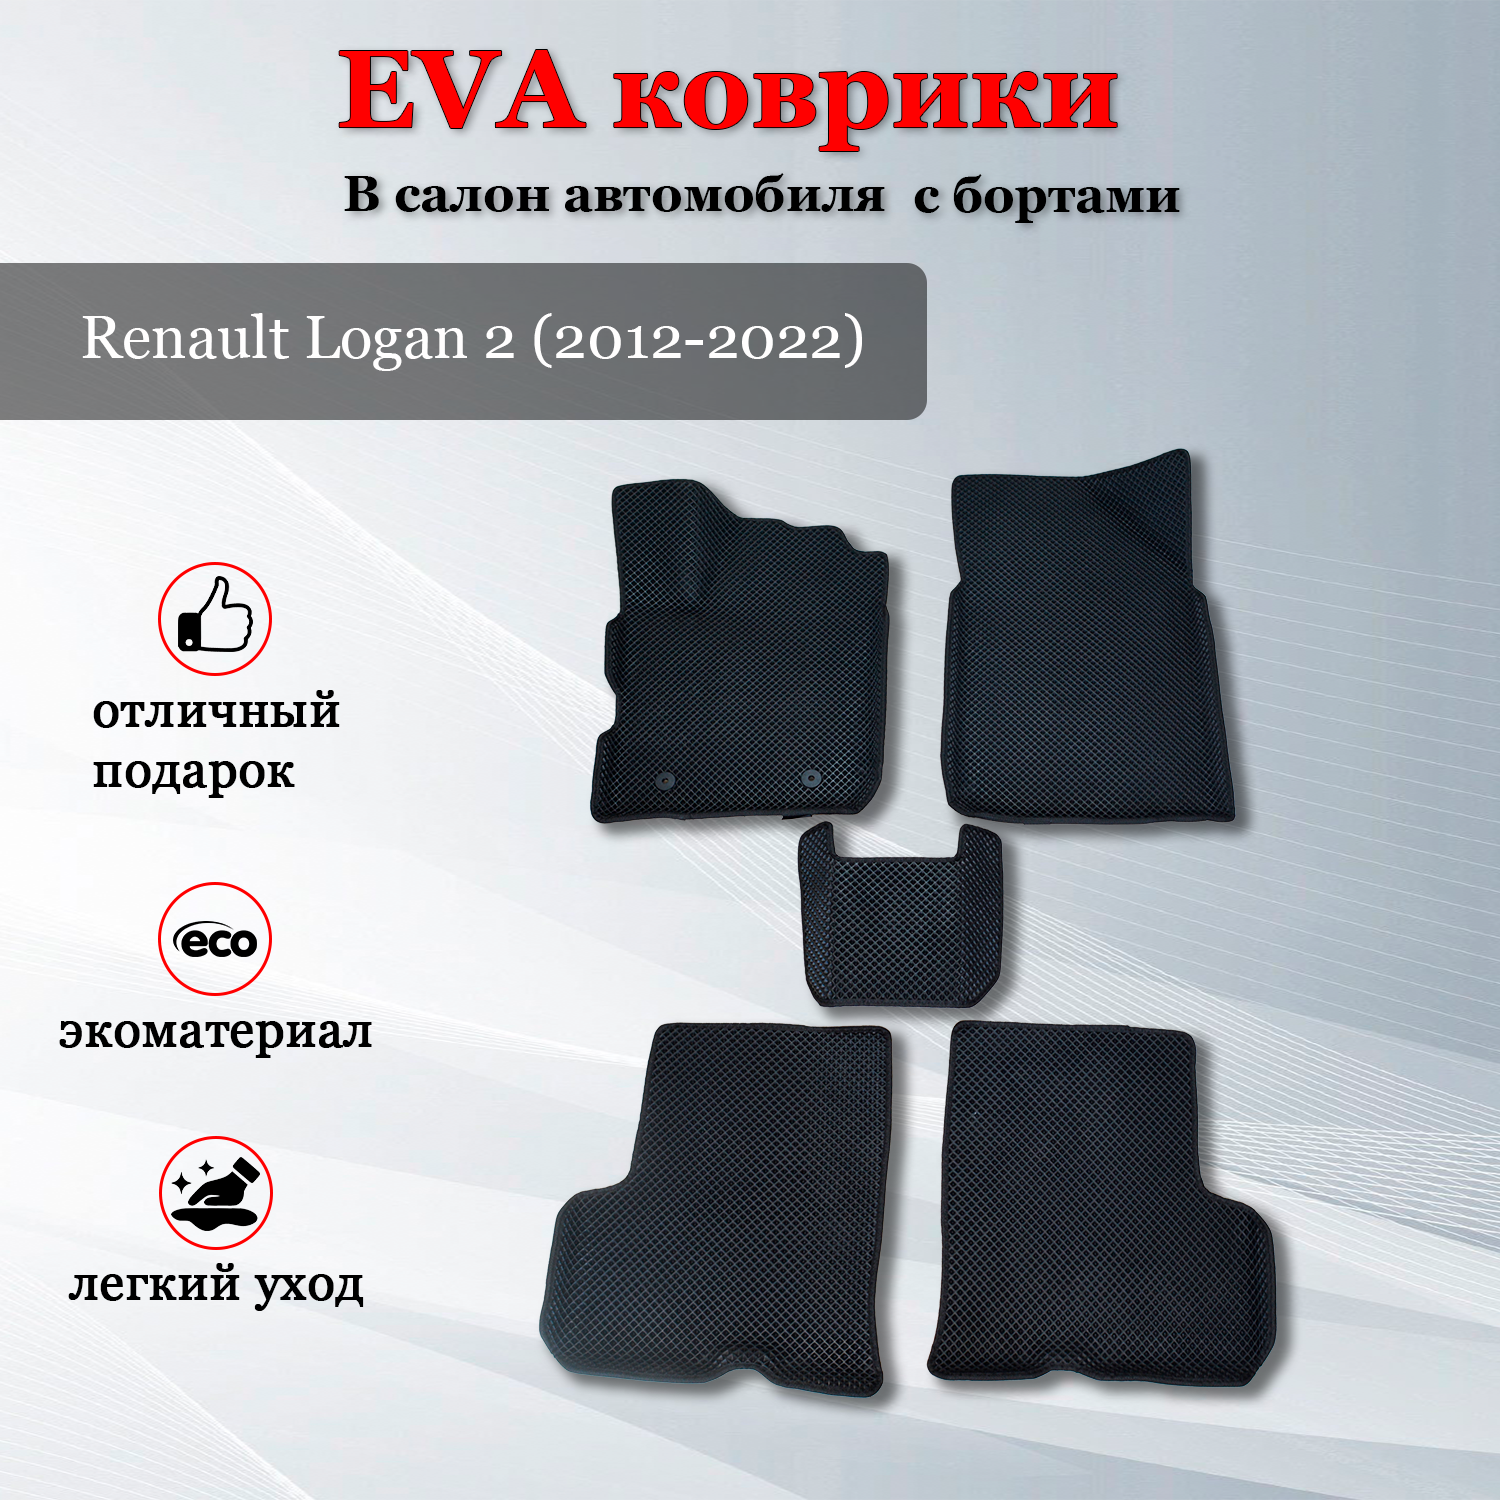 EVA (ЭВА, ЕВА) коврики автомобильные с бортами в салон автомобиля для Рено Логан 2 / Renault Logan 2 (2012-2022)